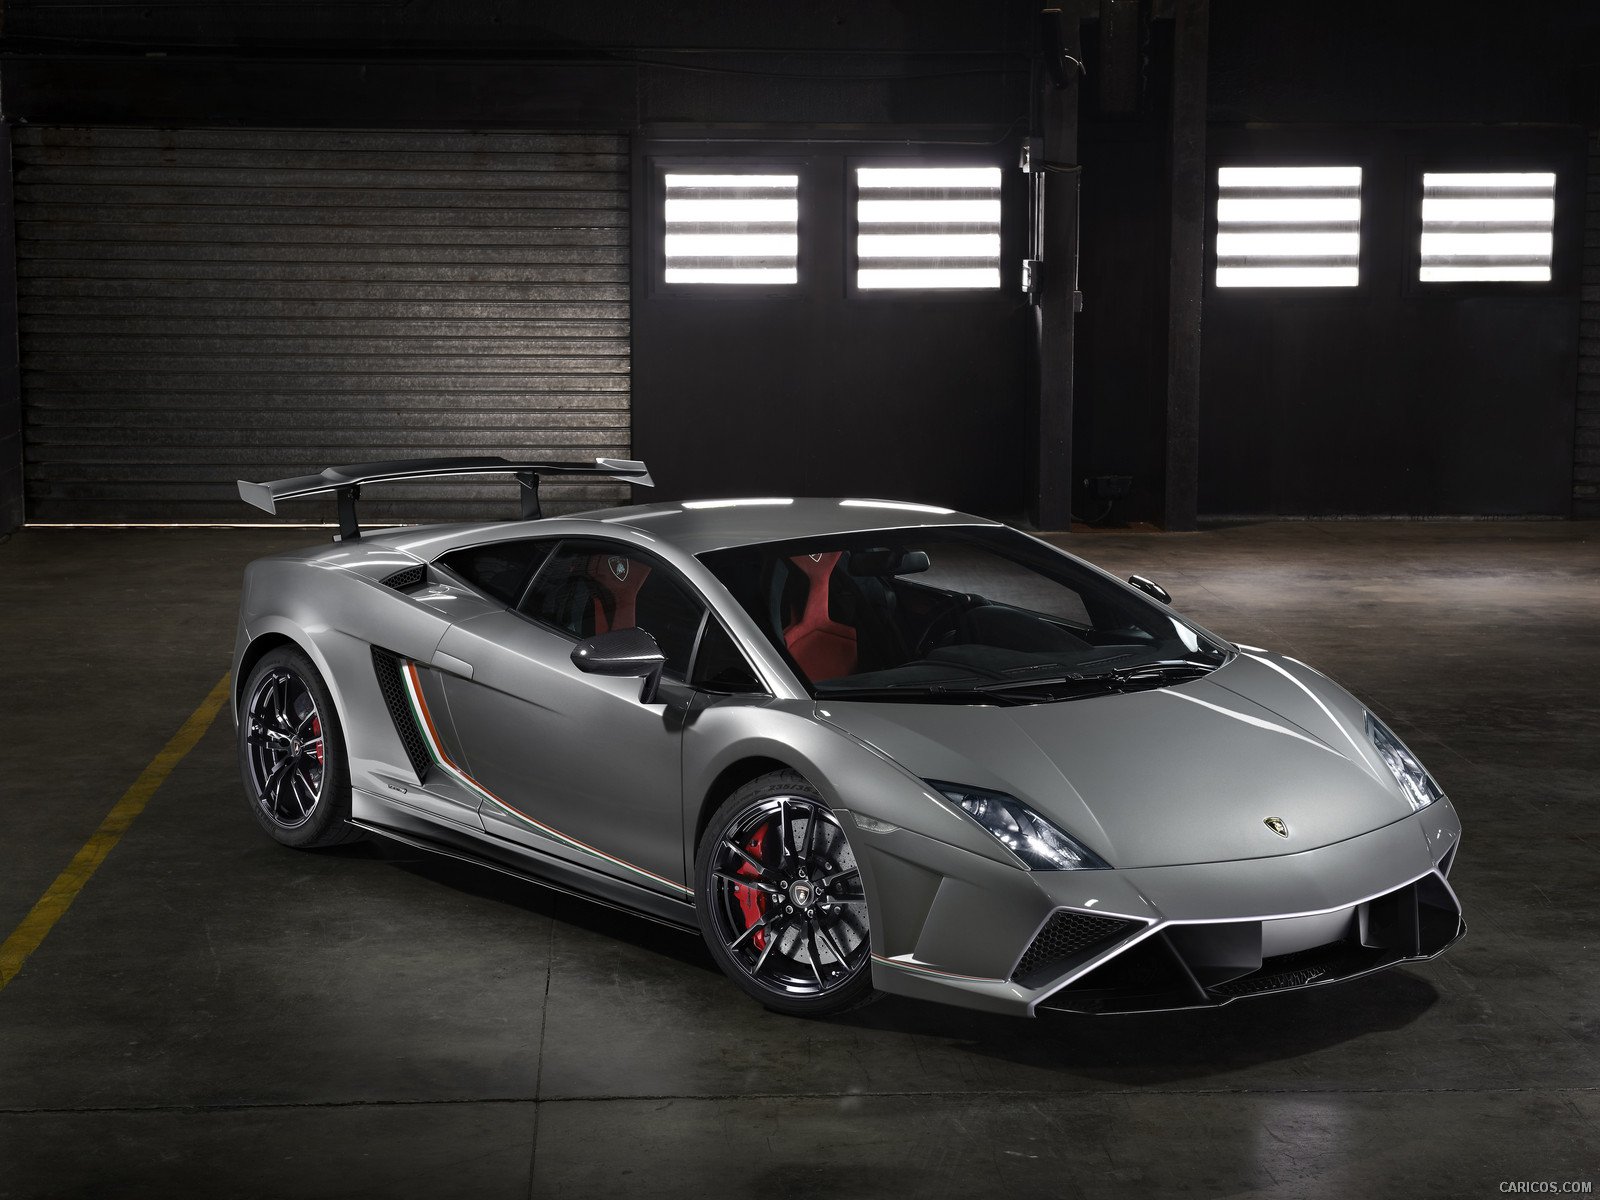 2013, Lamborghini, Gallardo, Lp, 570 4, Squadra, Corse, Italian, Dreamcar, Supercar, Exotic, Grigio, Grise, Gray Wallpaper